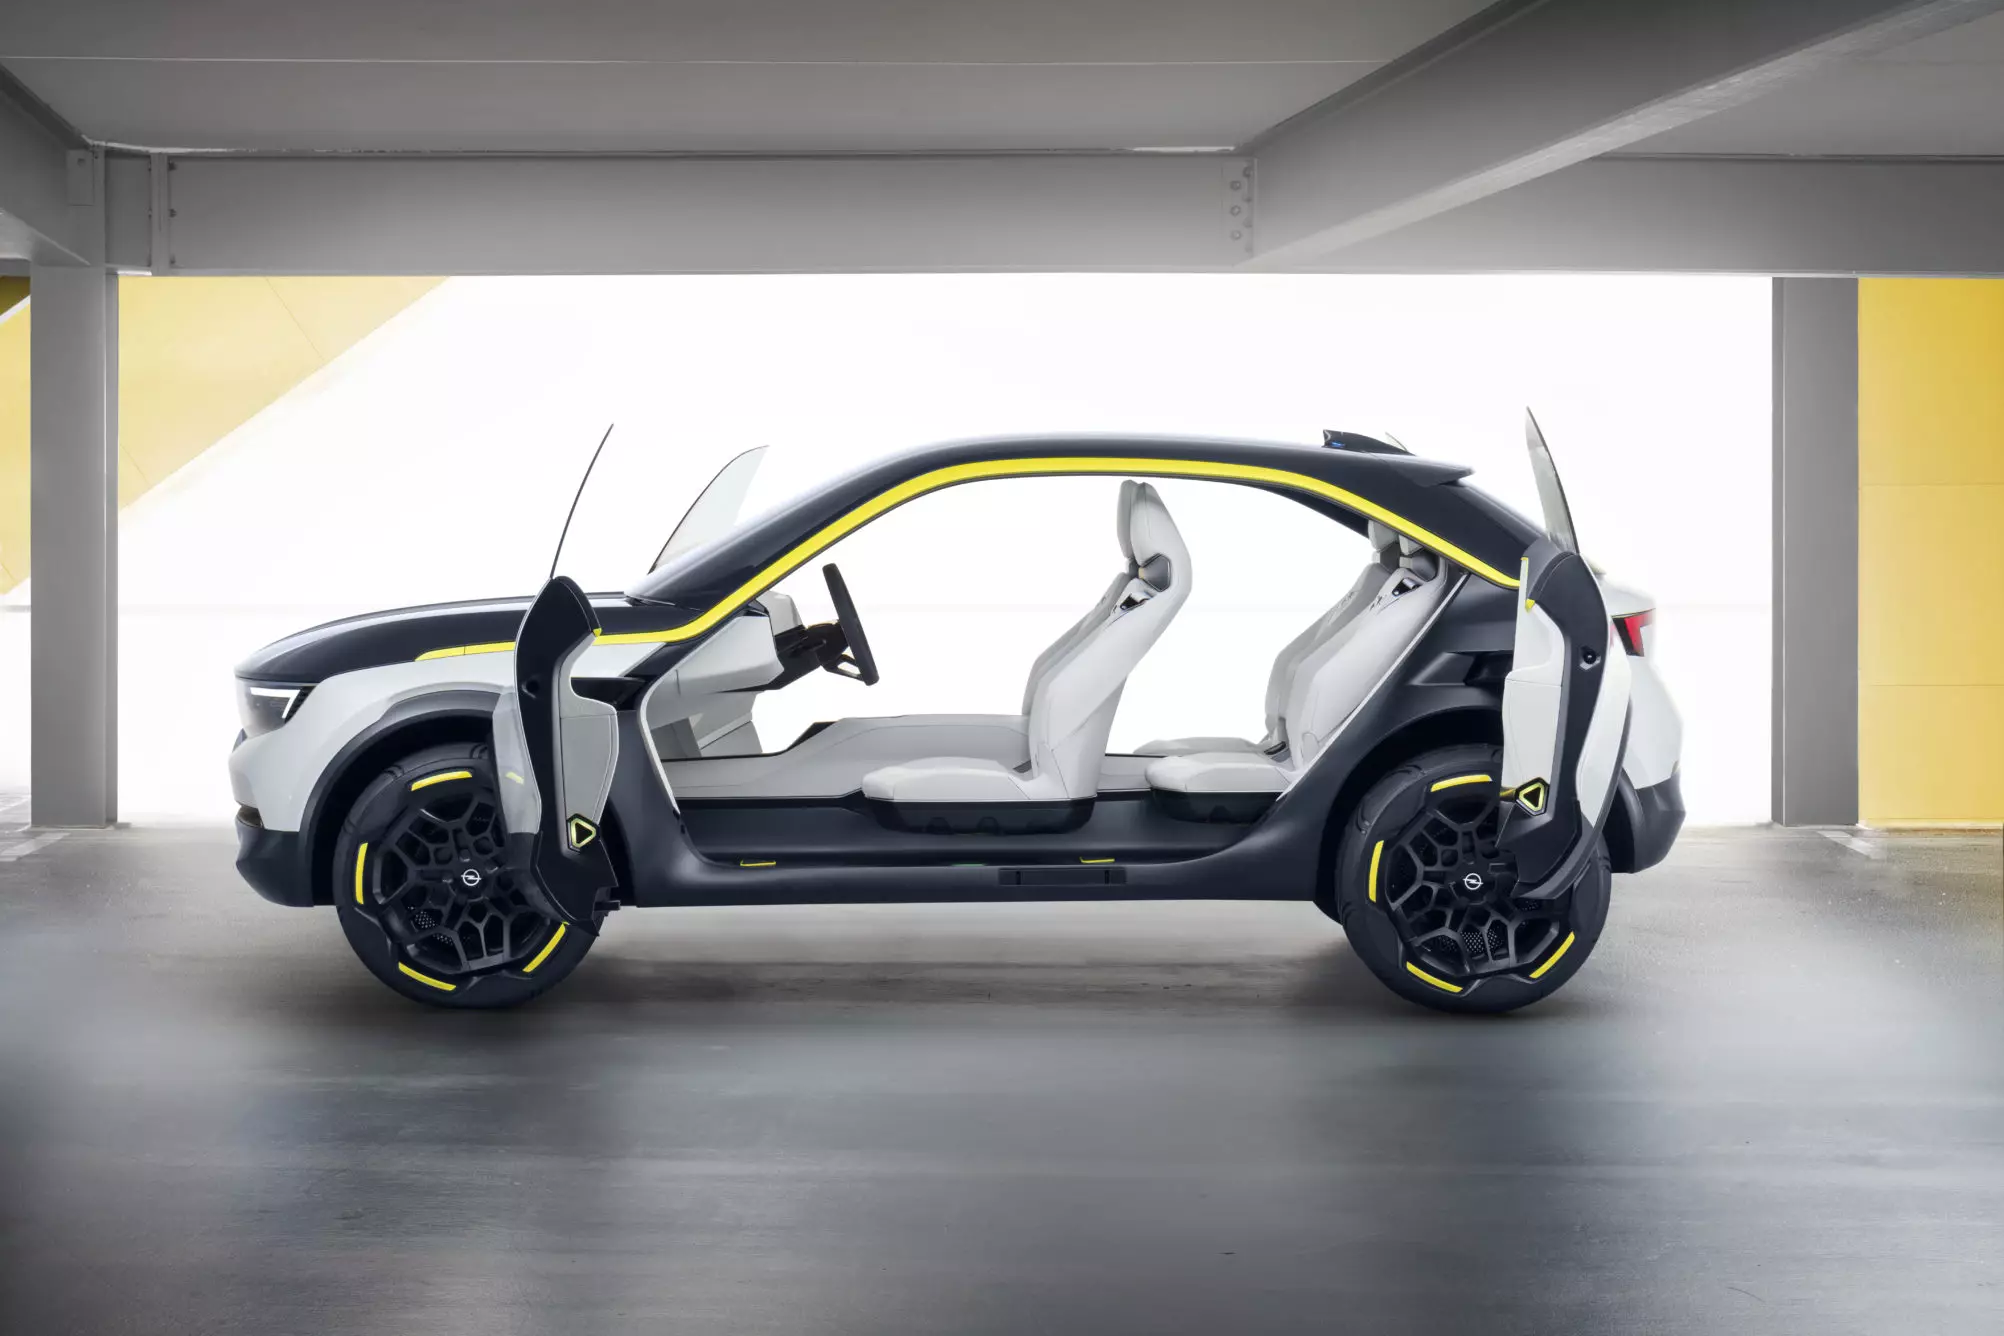 Thử nghiệm Opel GT X 2018